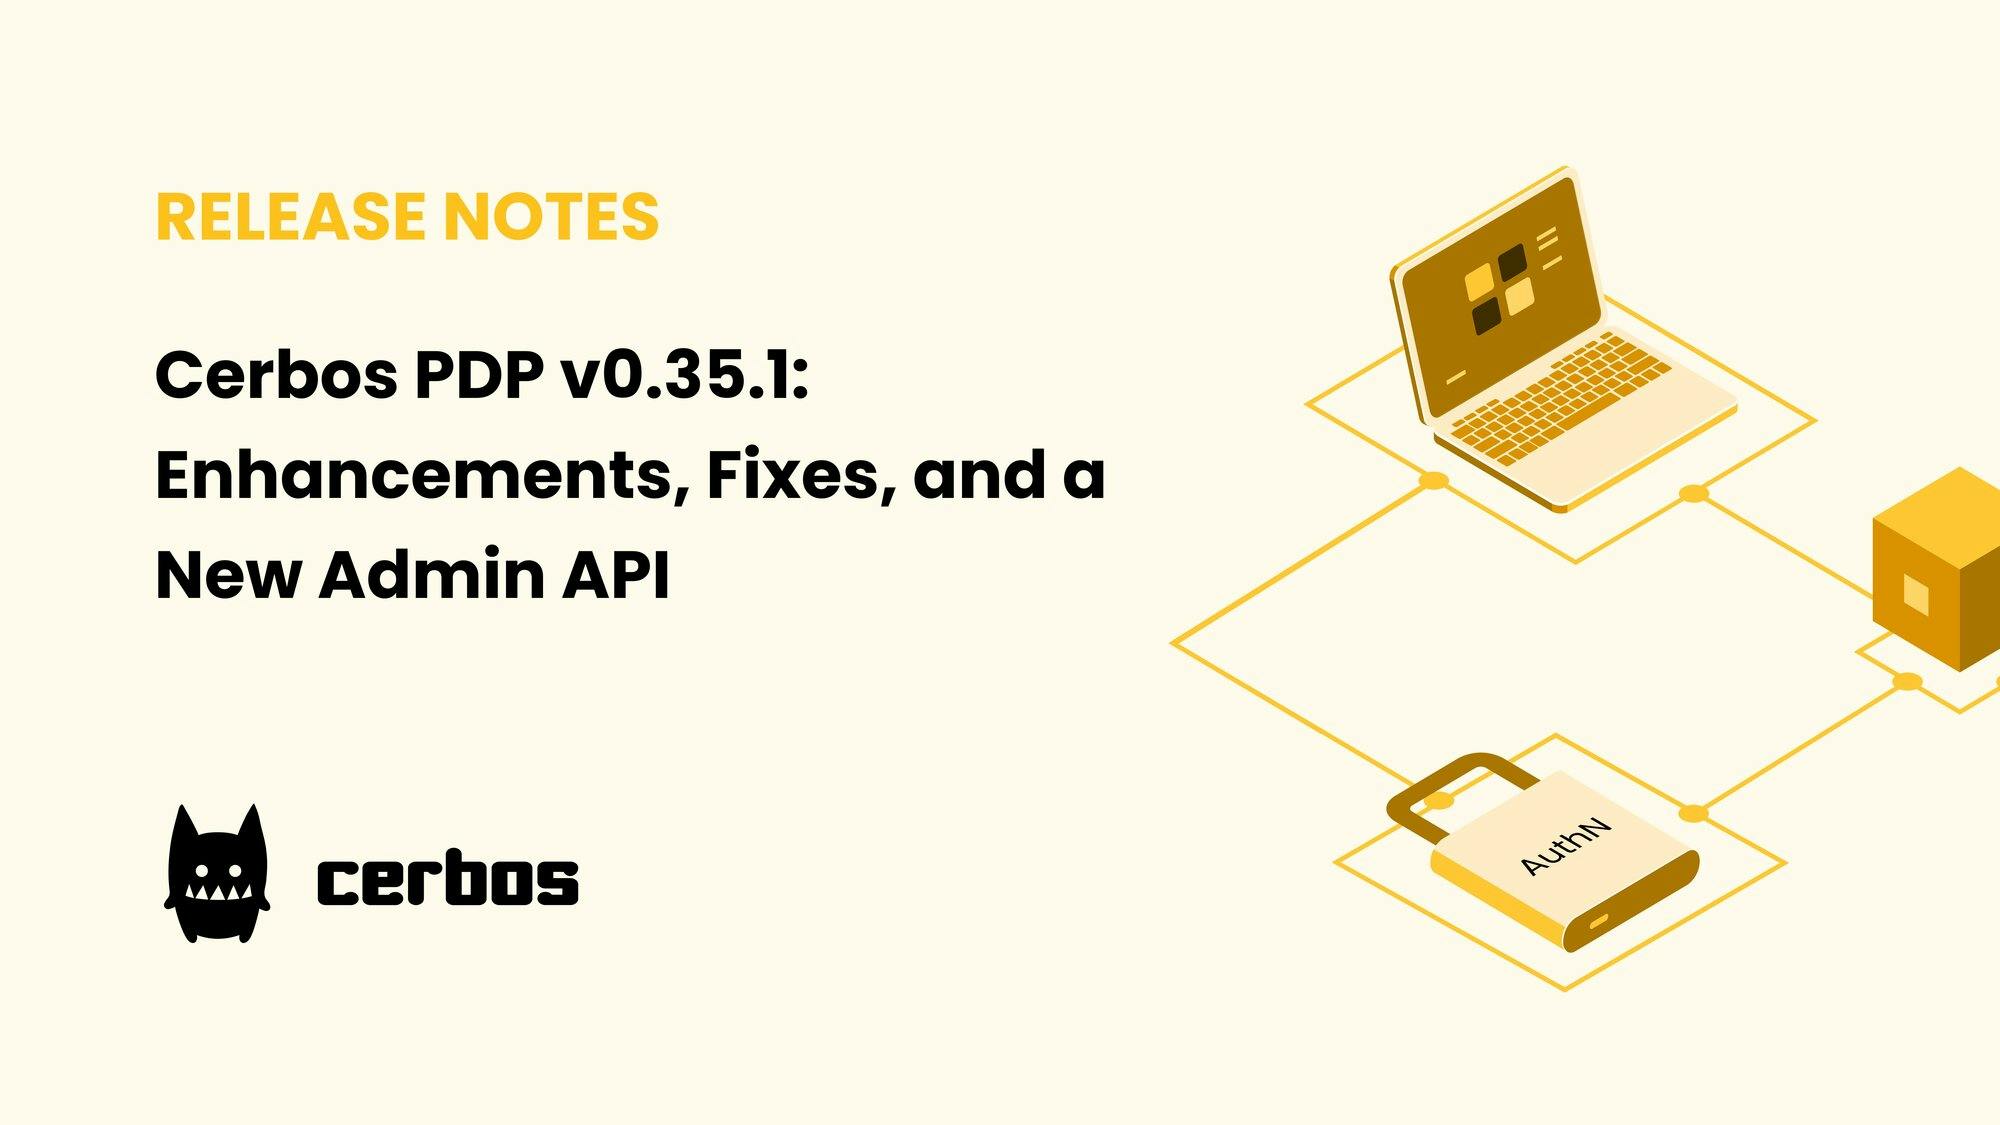 Cerbos PDP v0.35.1: Enhancements, fixes, and a new admin API